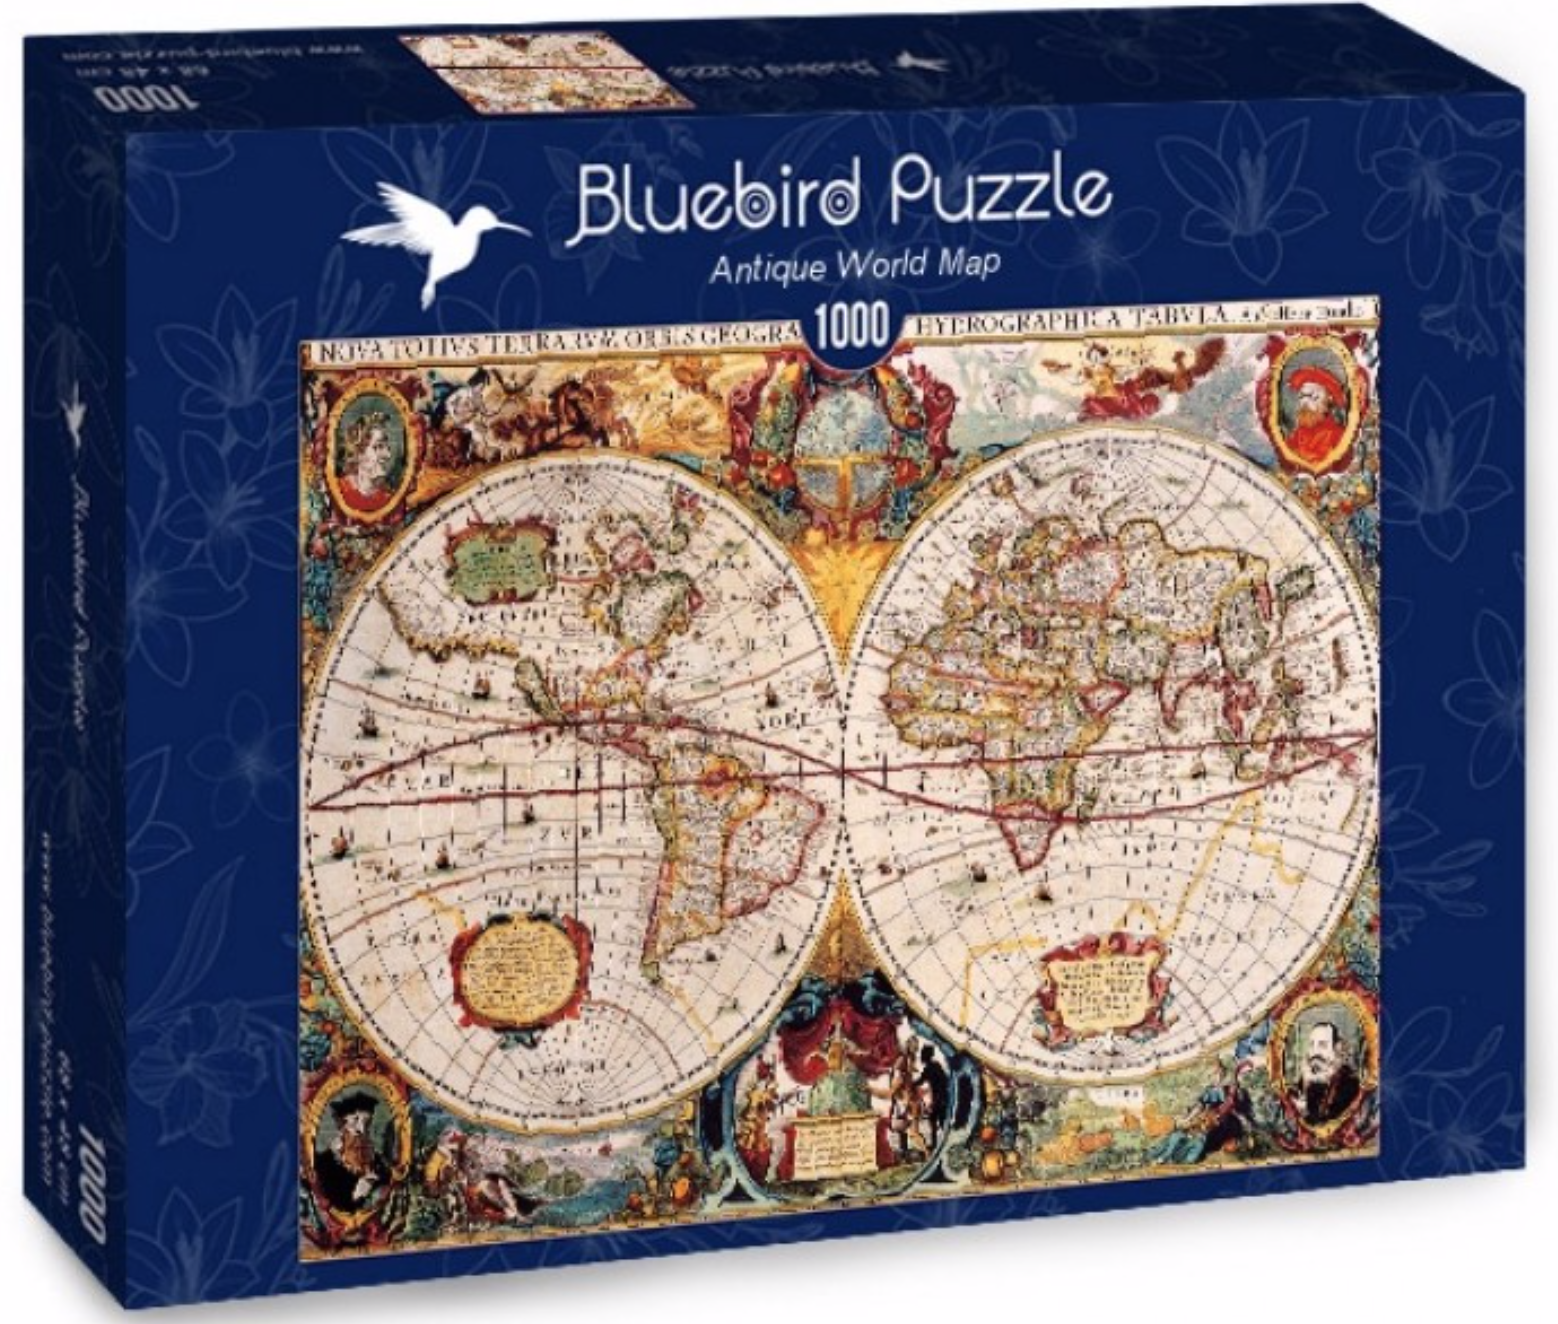 Puzzle miniature - le plus petit 1000 pièces puzzle jamais! - Puzzles123